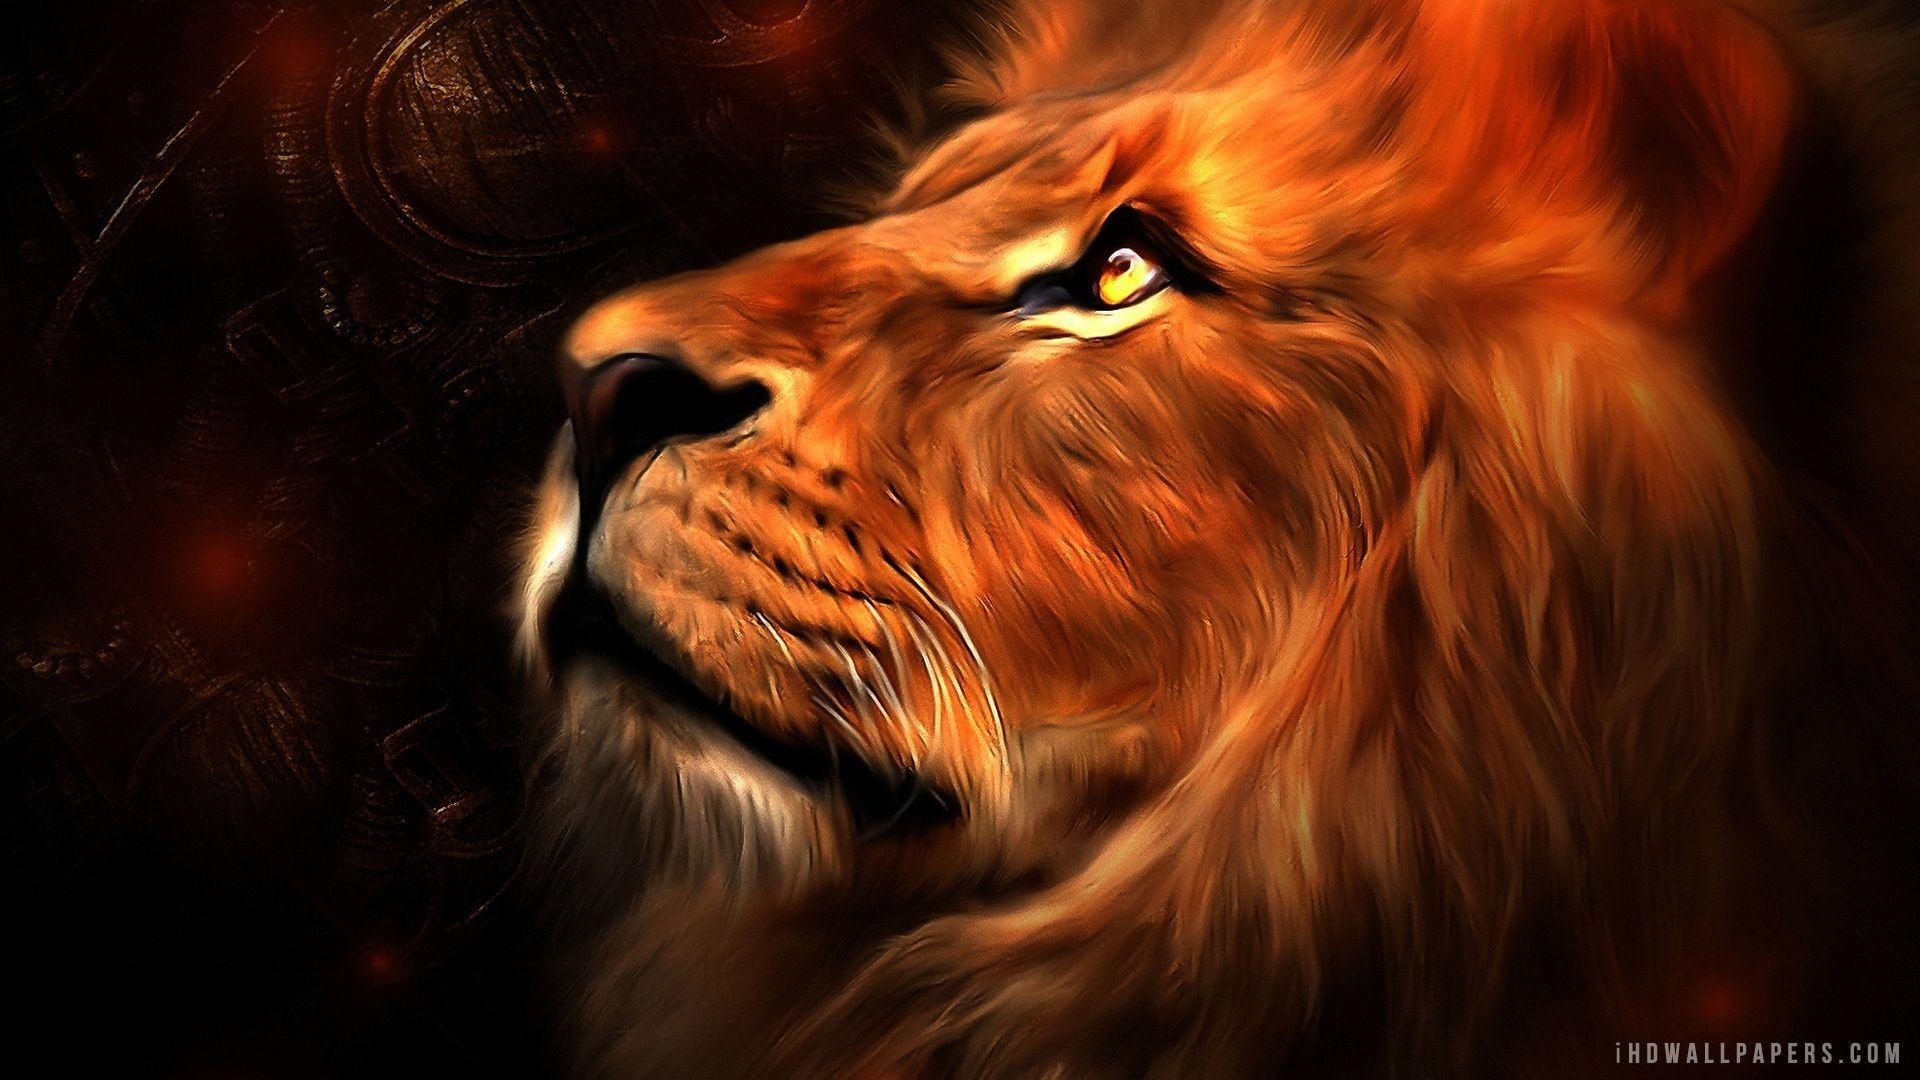 Lion Art HD Wallpaper. Lion art, Lion wallpaper, Animals artwork